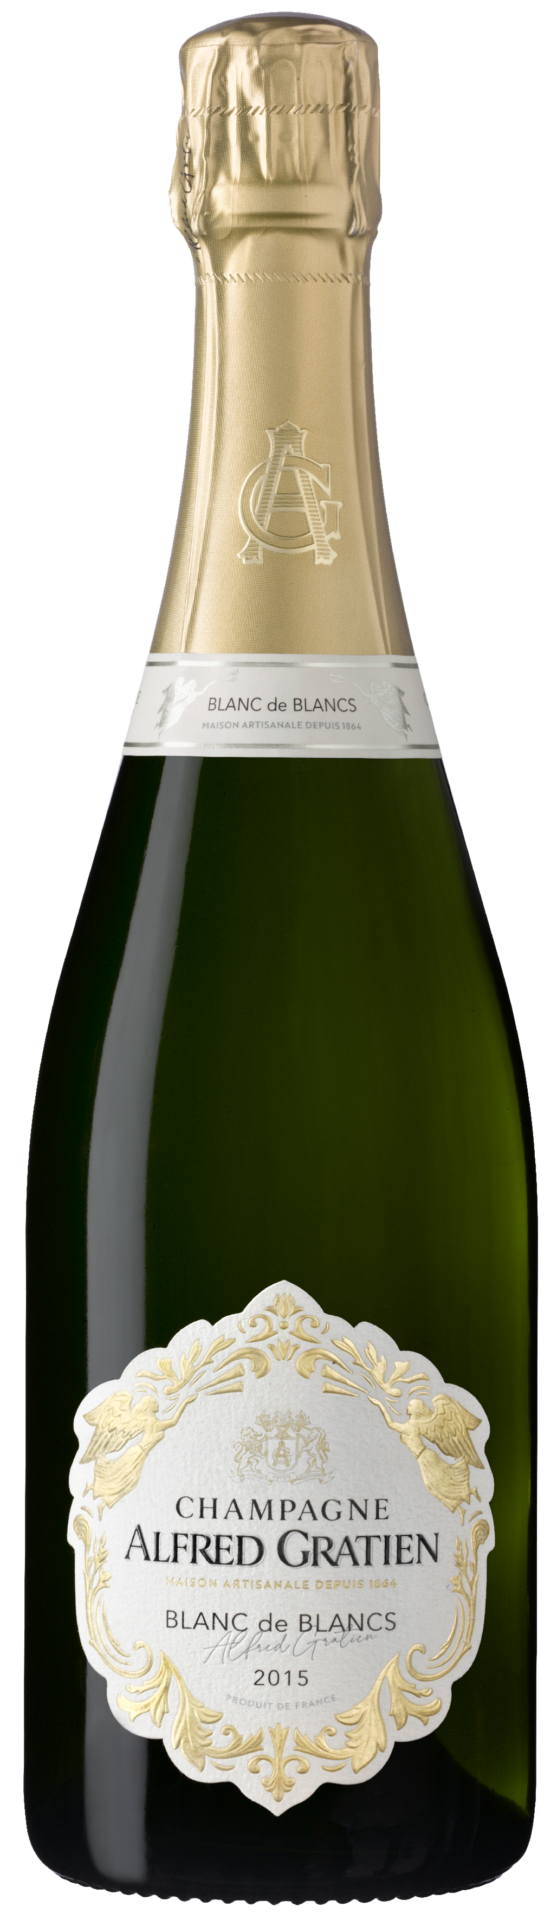 La bouteille de champagne Blanc de Blancs 2015 d'Alfred Gratien.